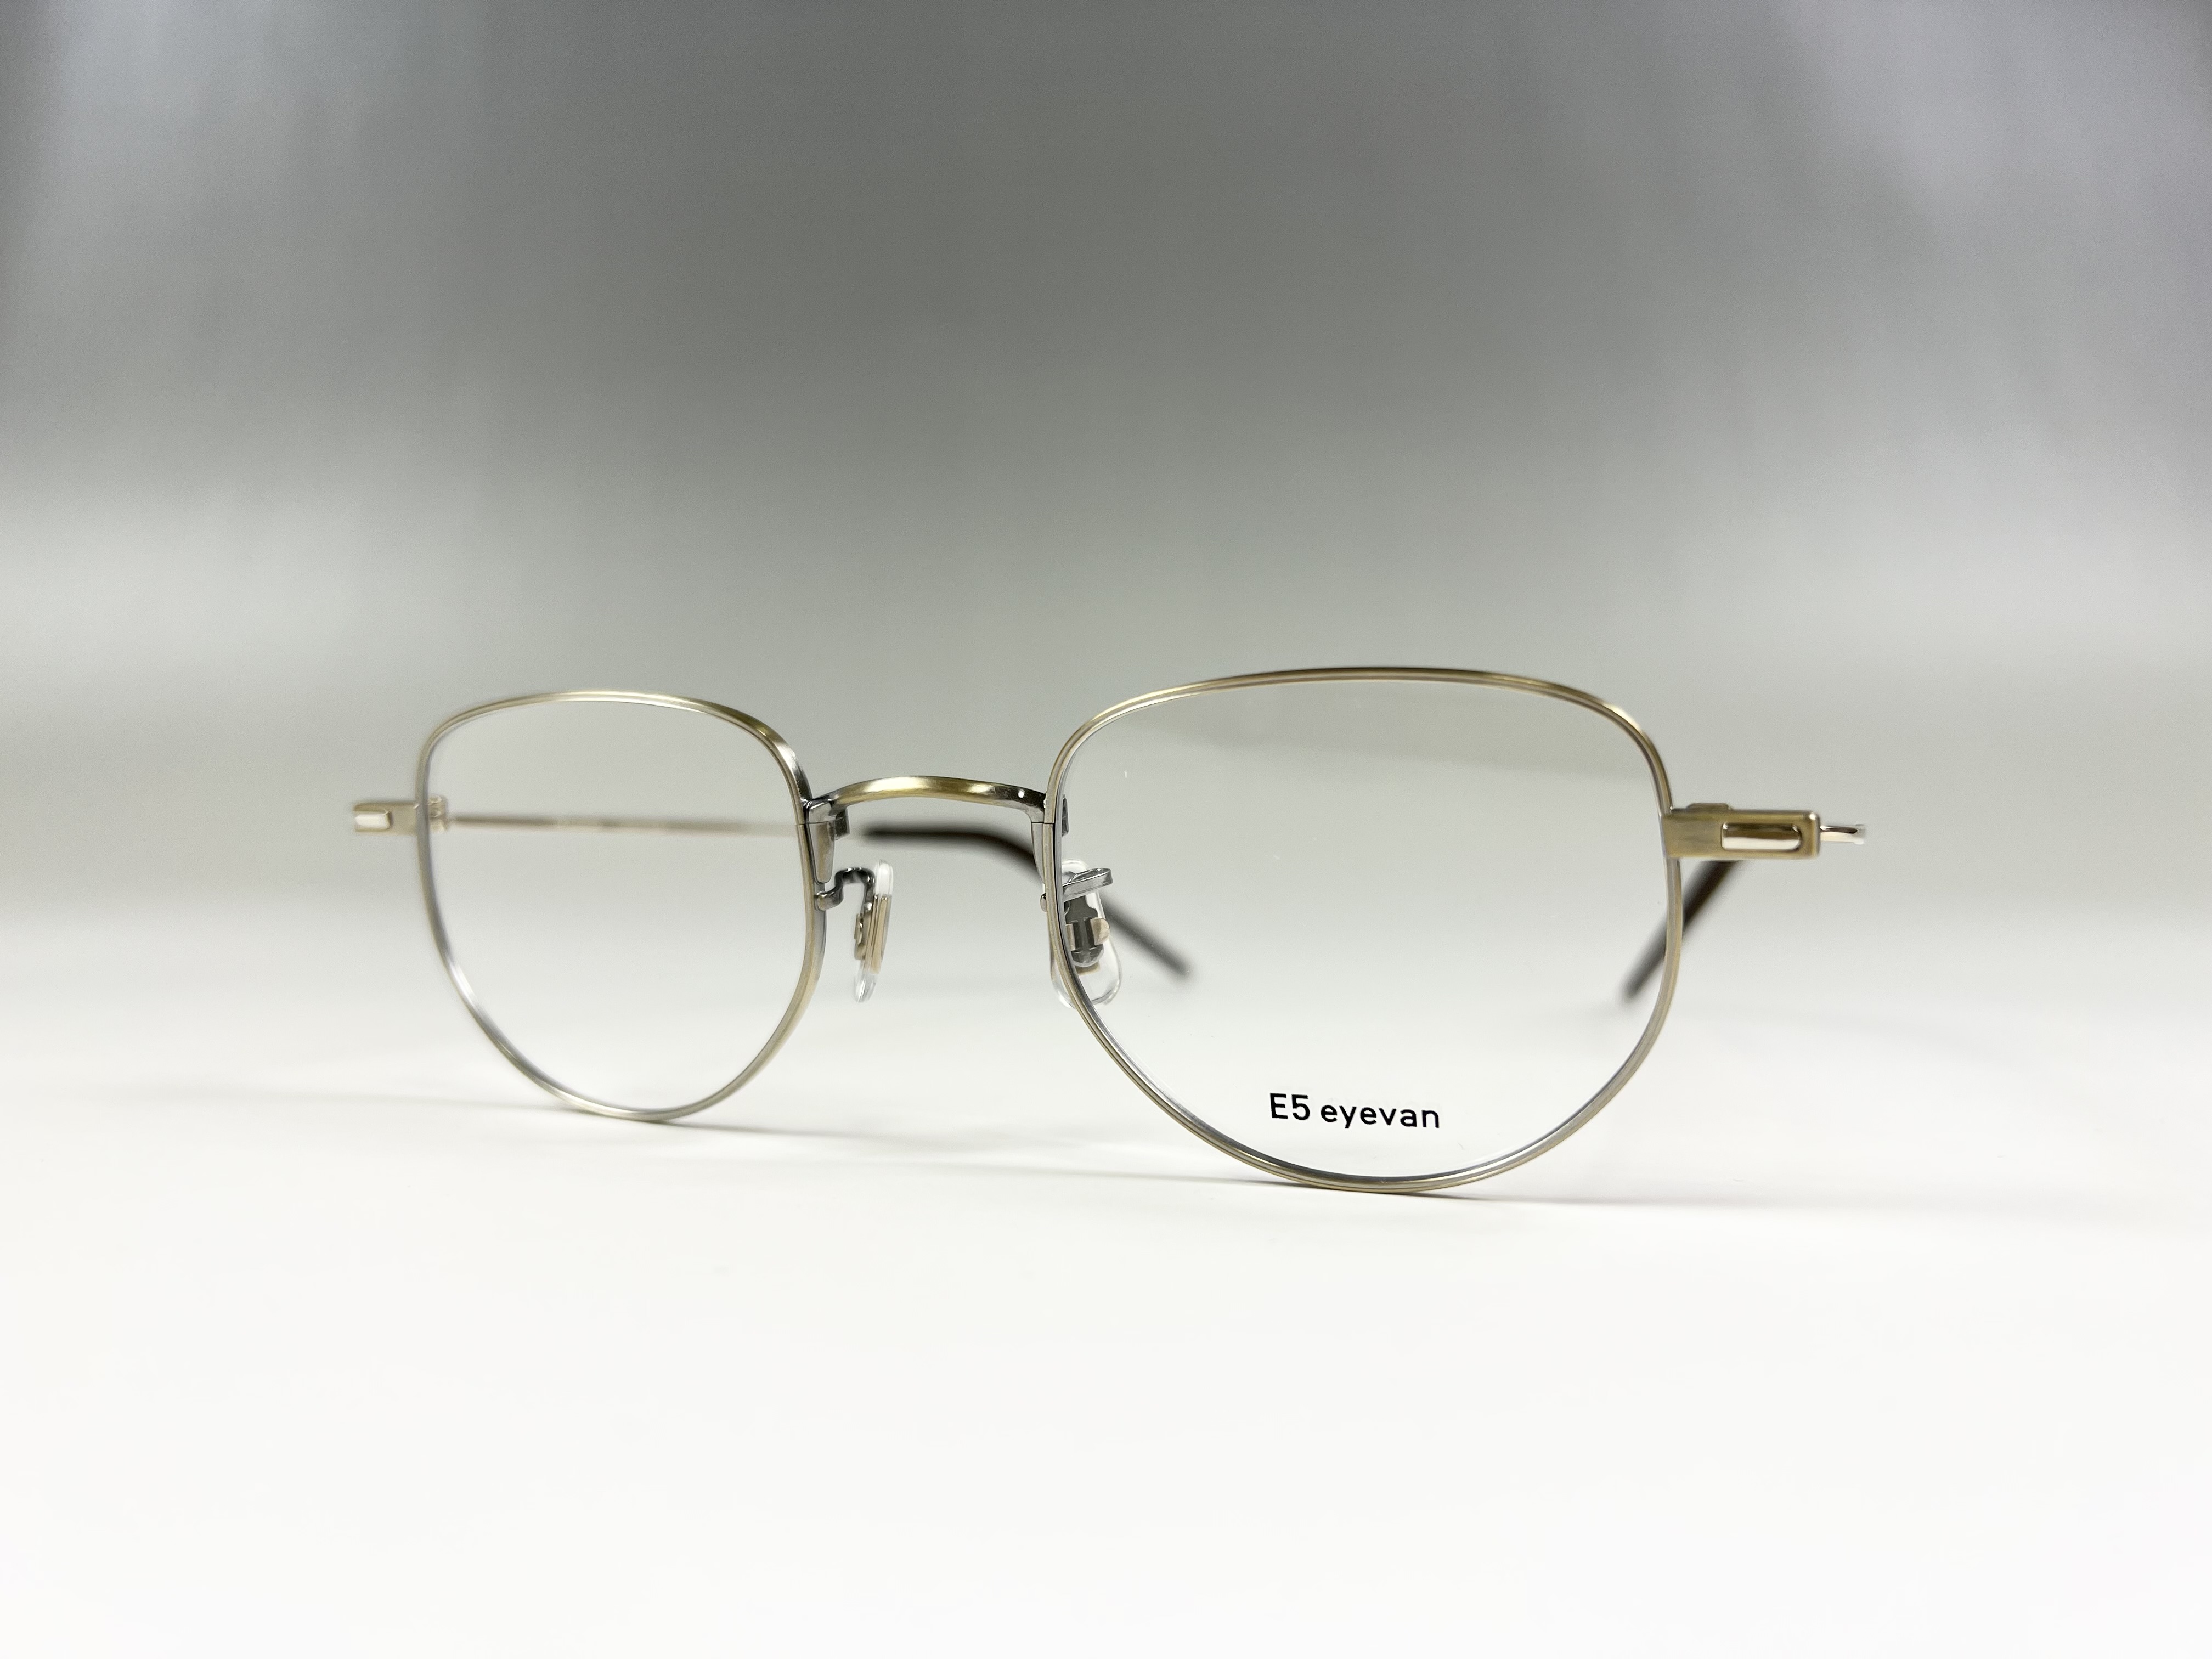 [ 美品 ]E5 eyevan M3 メガネ 眼鏡あとお値下げは可能でしょうか